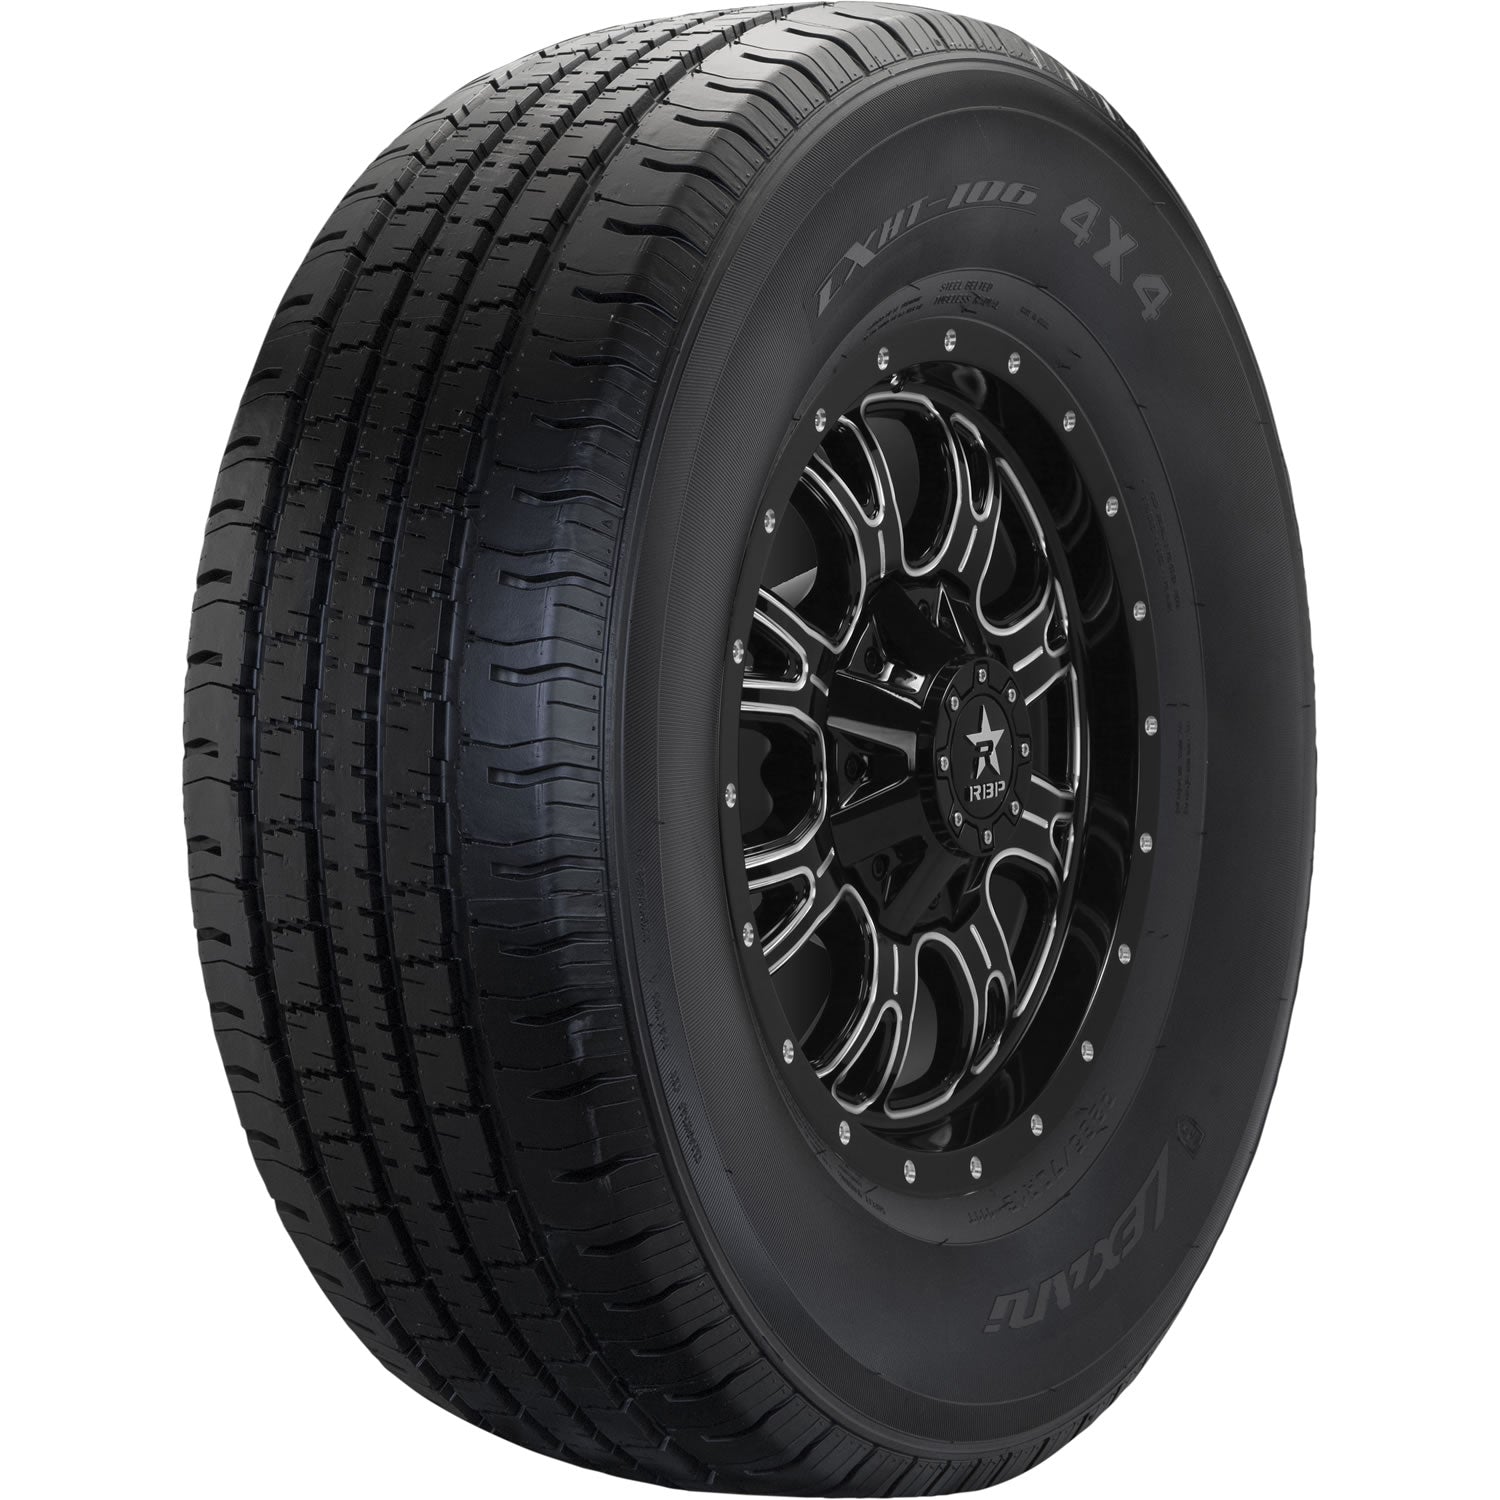 LEXANI LXHT-106 P235/60R18 (29.1X9.5R 18) Tires